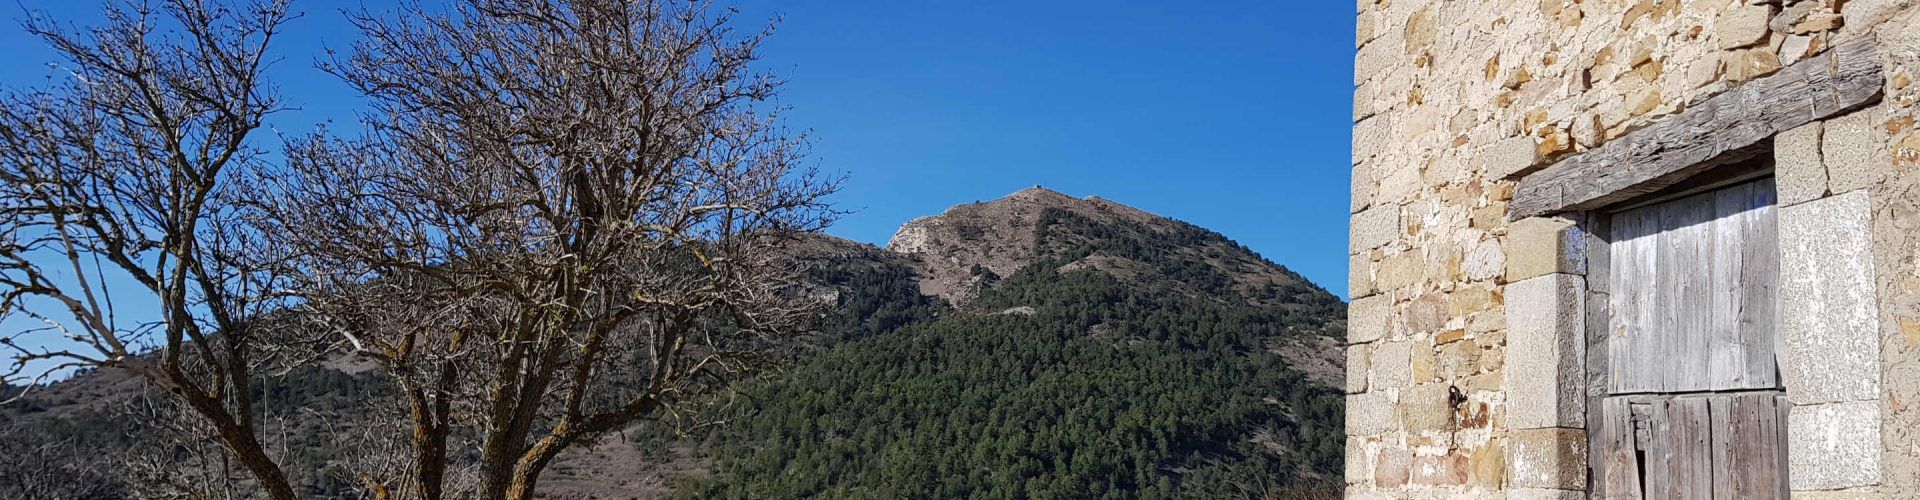 Puig anuncia la compra del pico del Penyagolosa y el castillo de la Todolella 